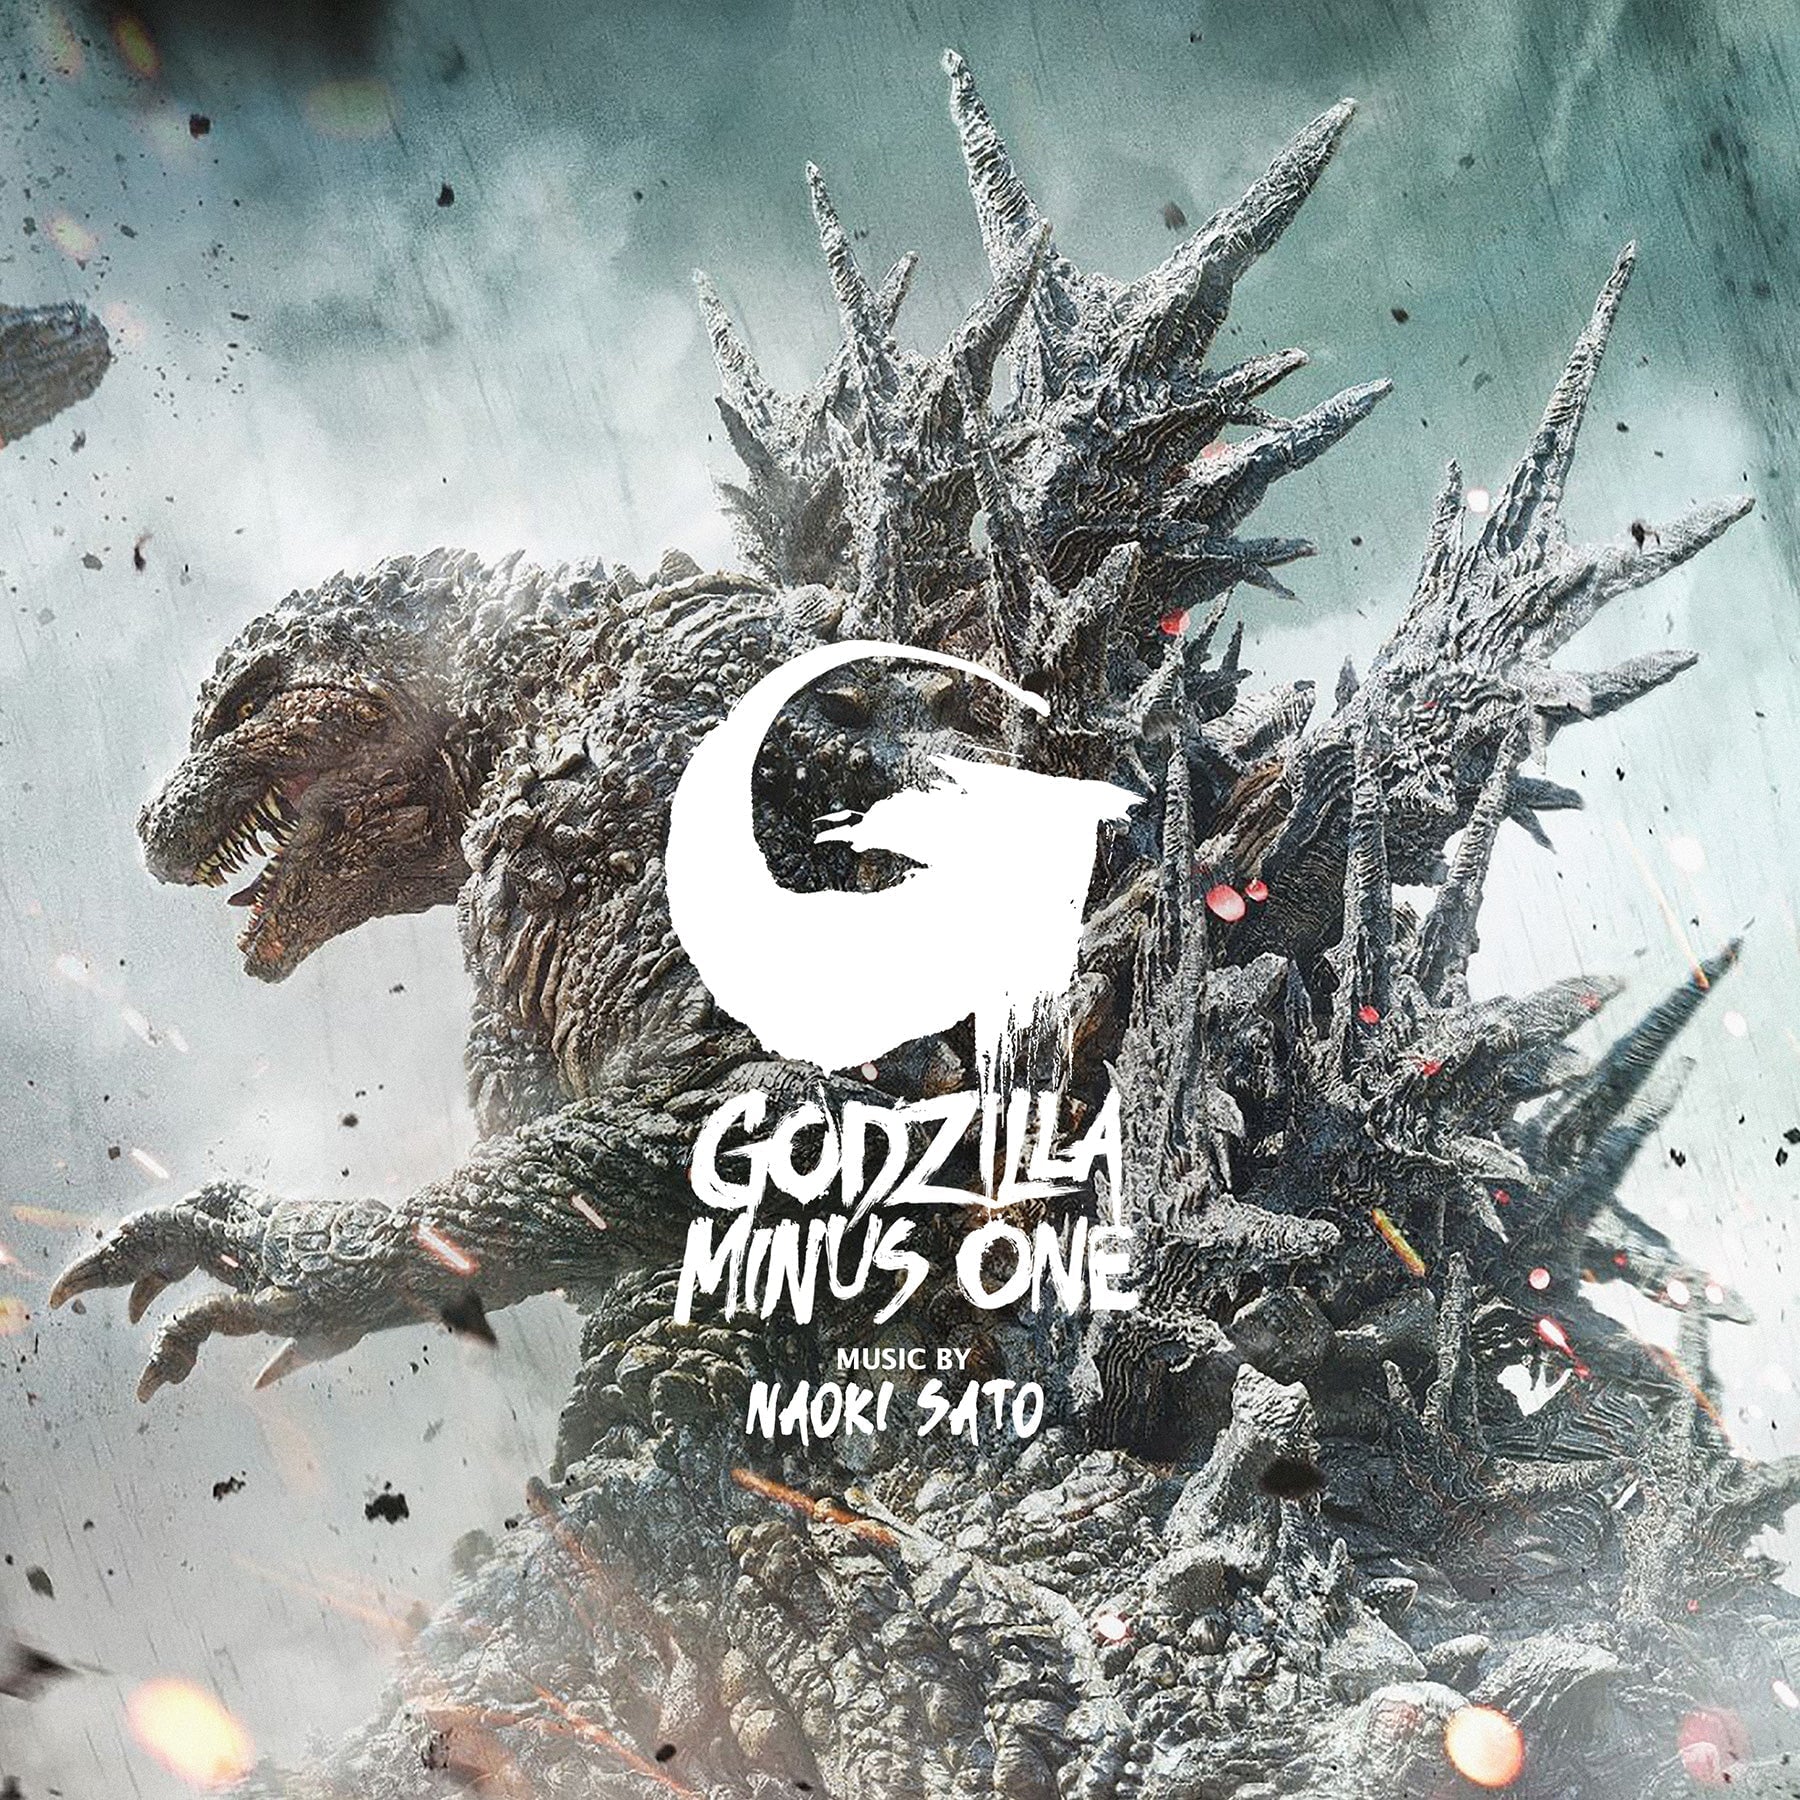 Godzilla Minus One (Original Motion Picture Score) ("Godzilla Heat Ray" Colored Vinyl 2LP)